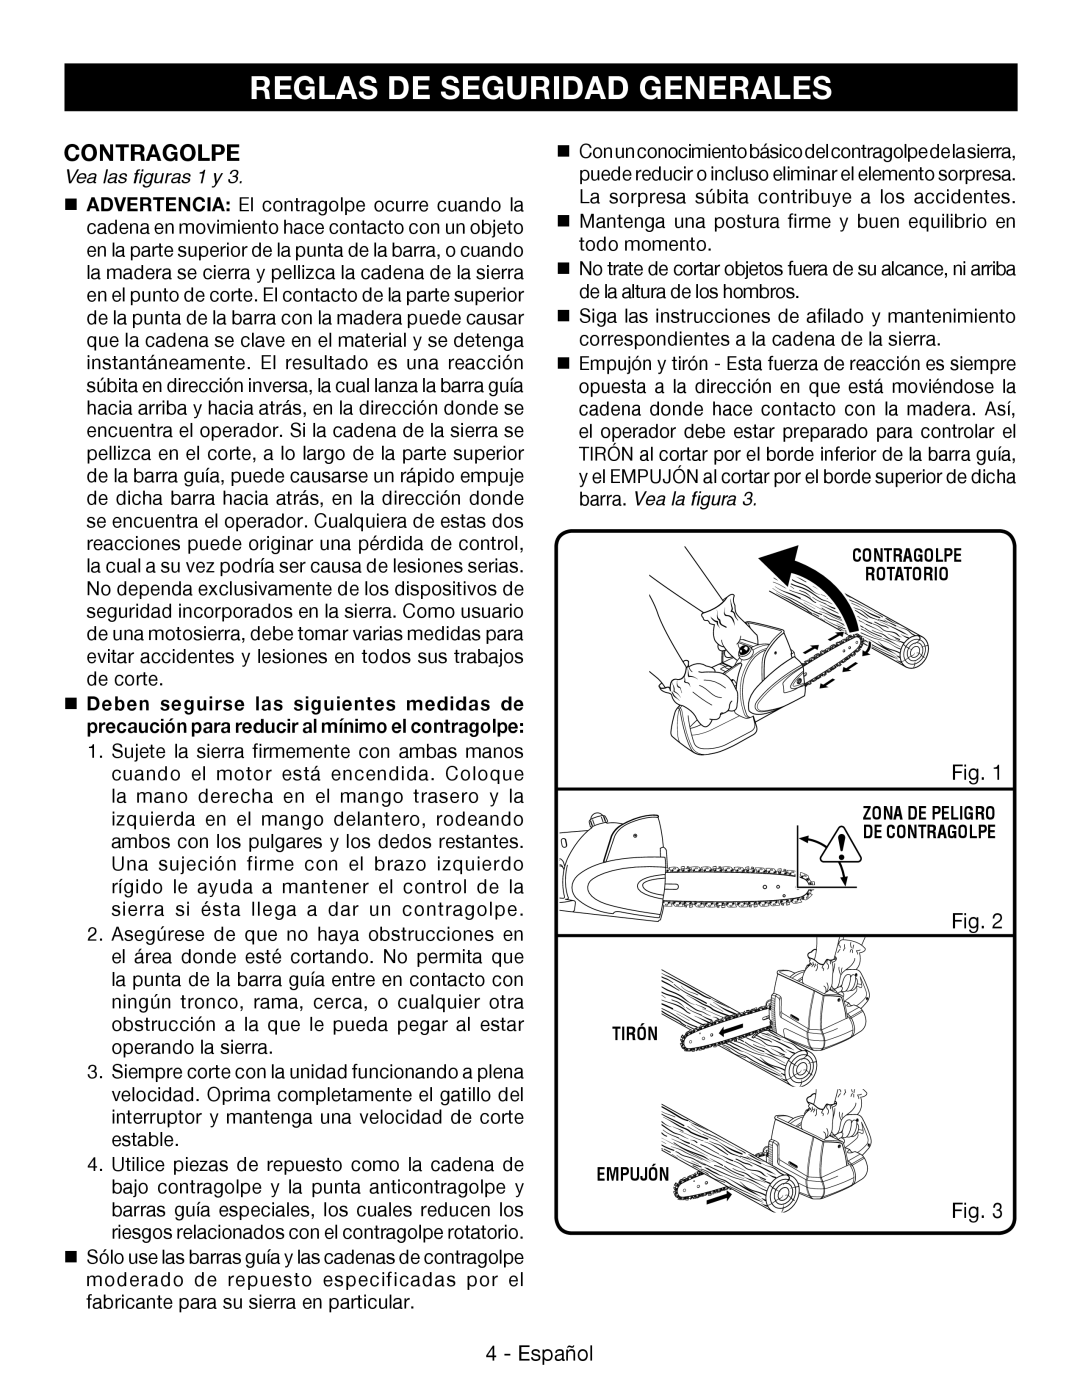 Ryobi P545 manuel dutilisation Contragolpe, Reglas De Seguridad Generales, Fig, Español, Vea las figuras 1 y 